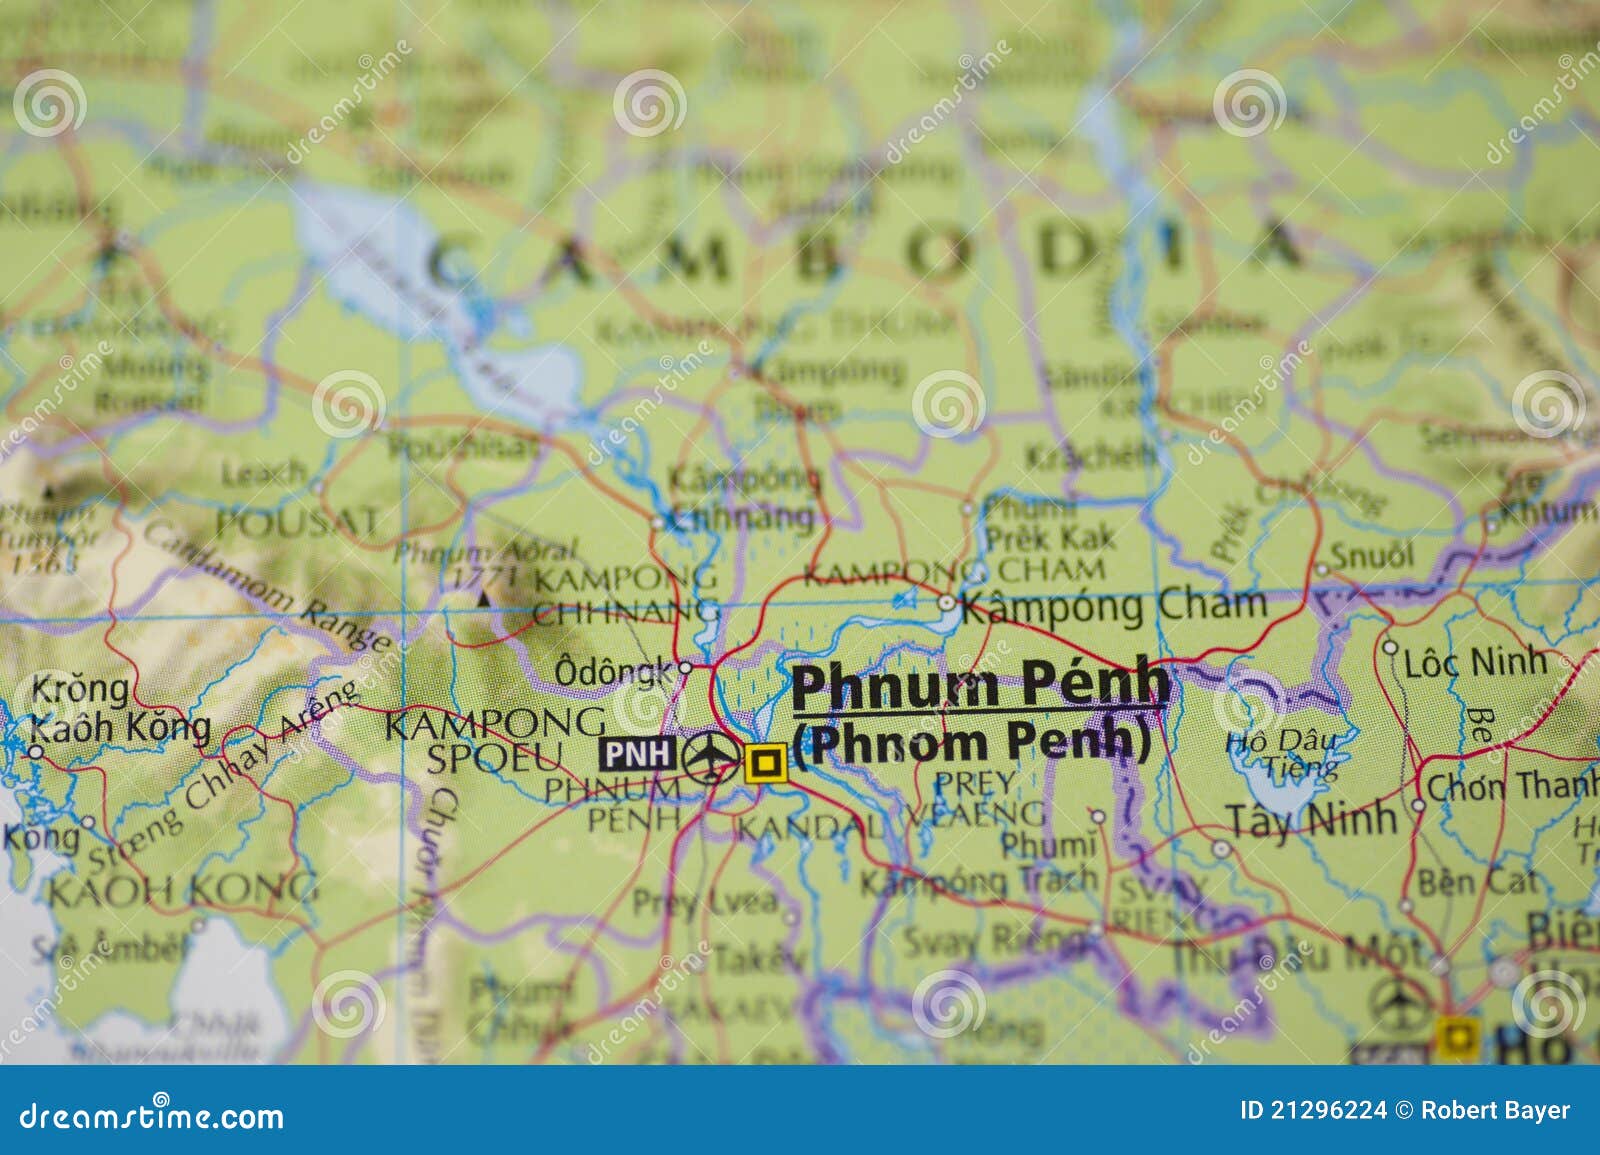 Mapa de Phnom Penh Cambodia. Detalhe do mapa do close up de Phnom Penh, de capital de Cambodia, e dos arredores, incluindo a parte da fronteira com Vietnam.